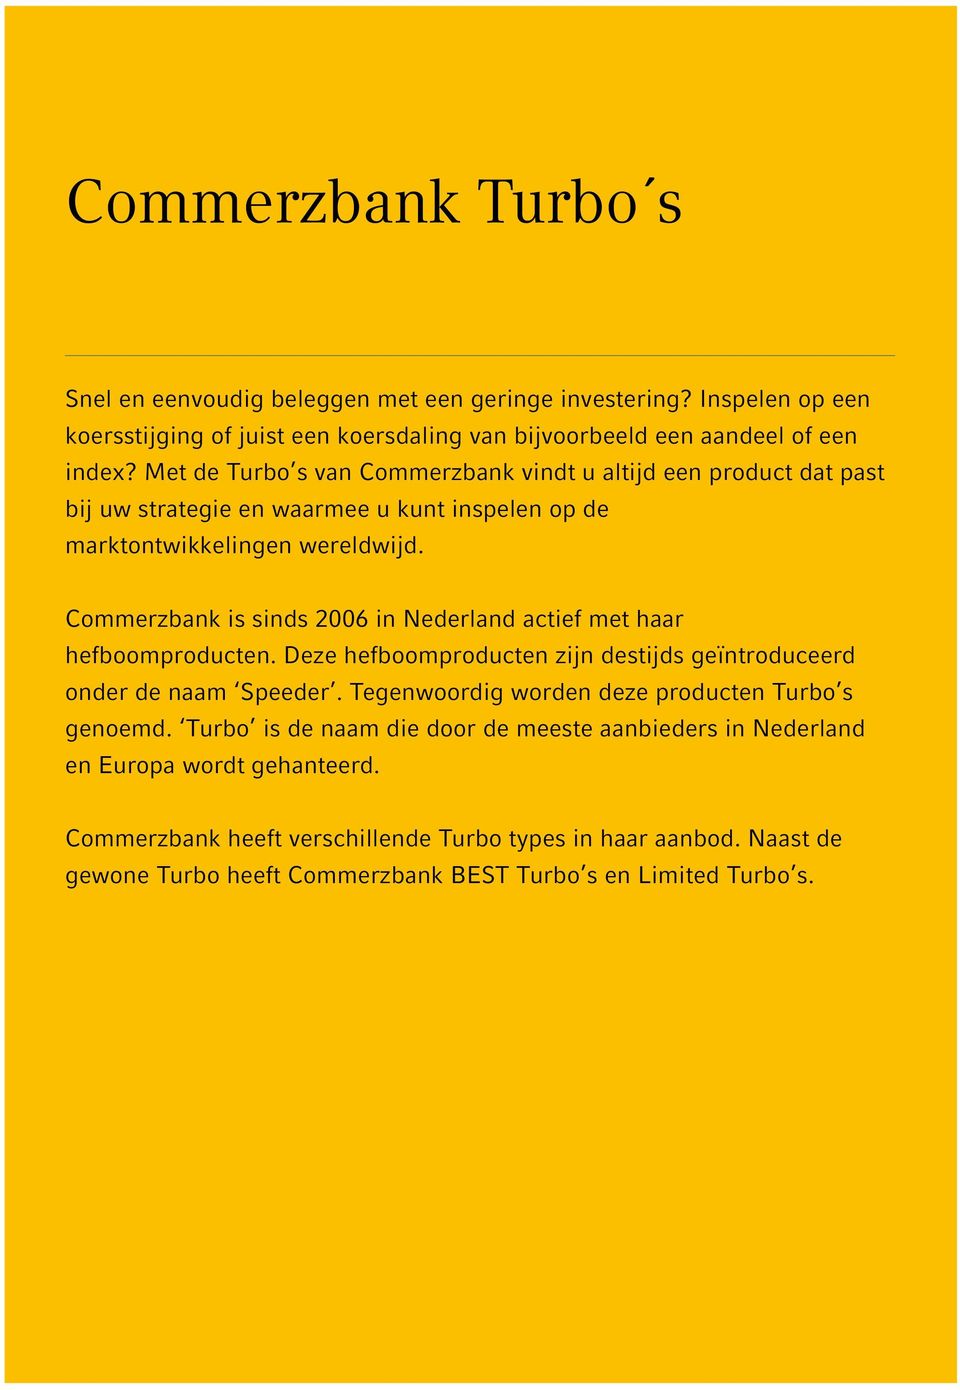 Commerzbank is sinds 2006 in Nederland actief met haar hefboomproducten. Deze hefboomproducten zijn destijds geïntroduceerd onder de naam Speeder.